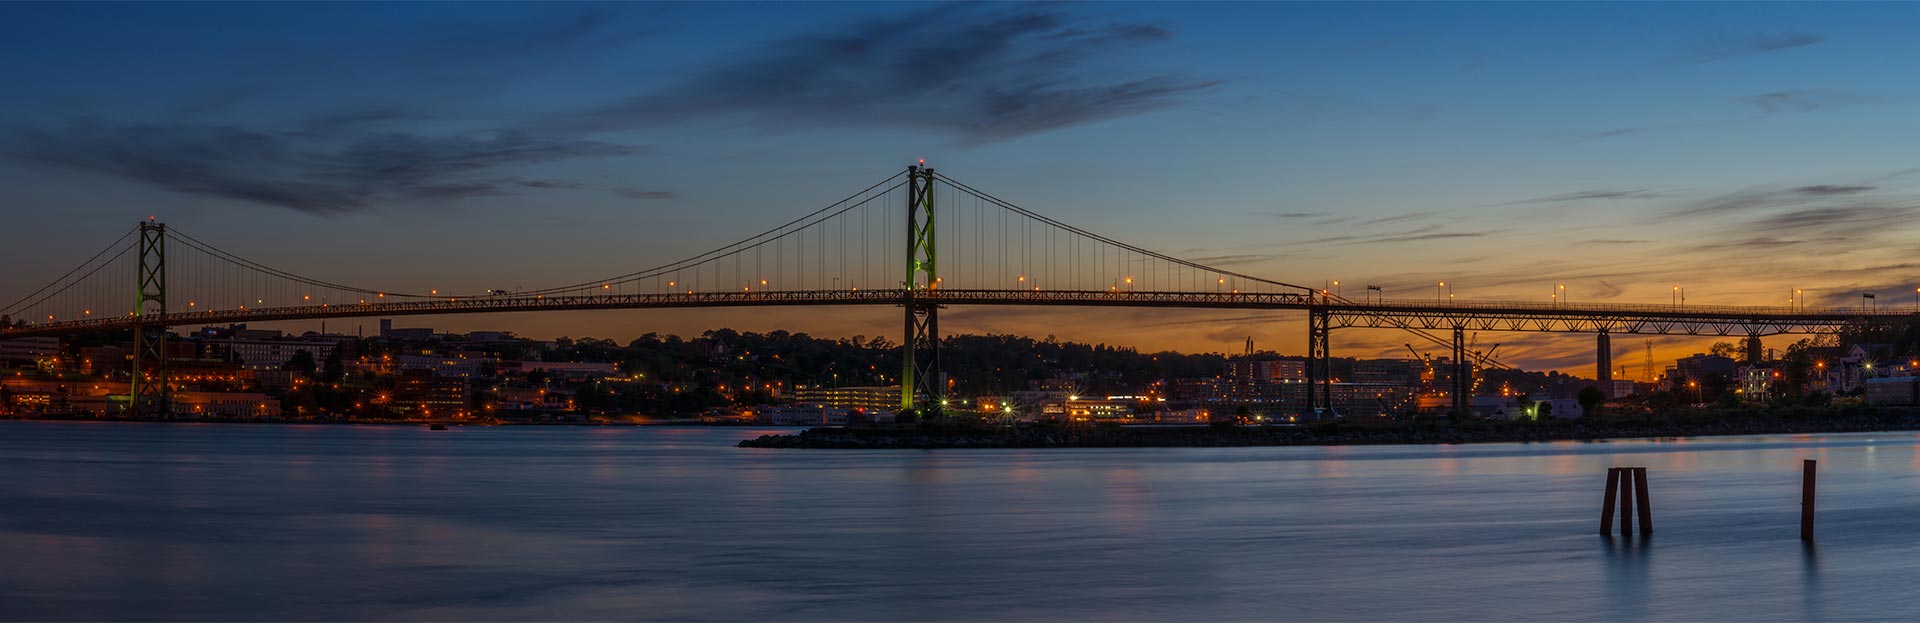 Halifax Bridge Night